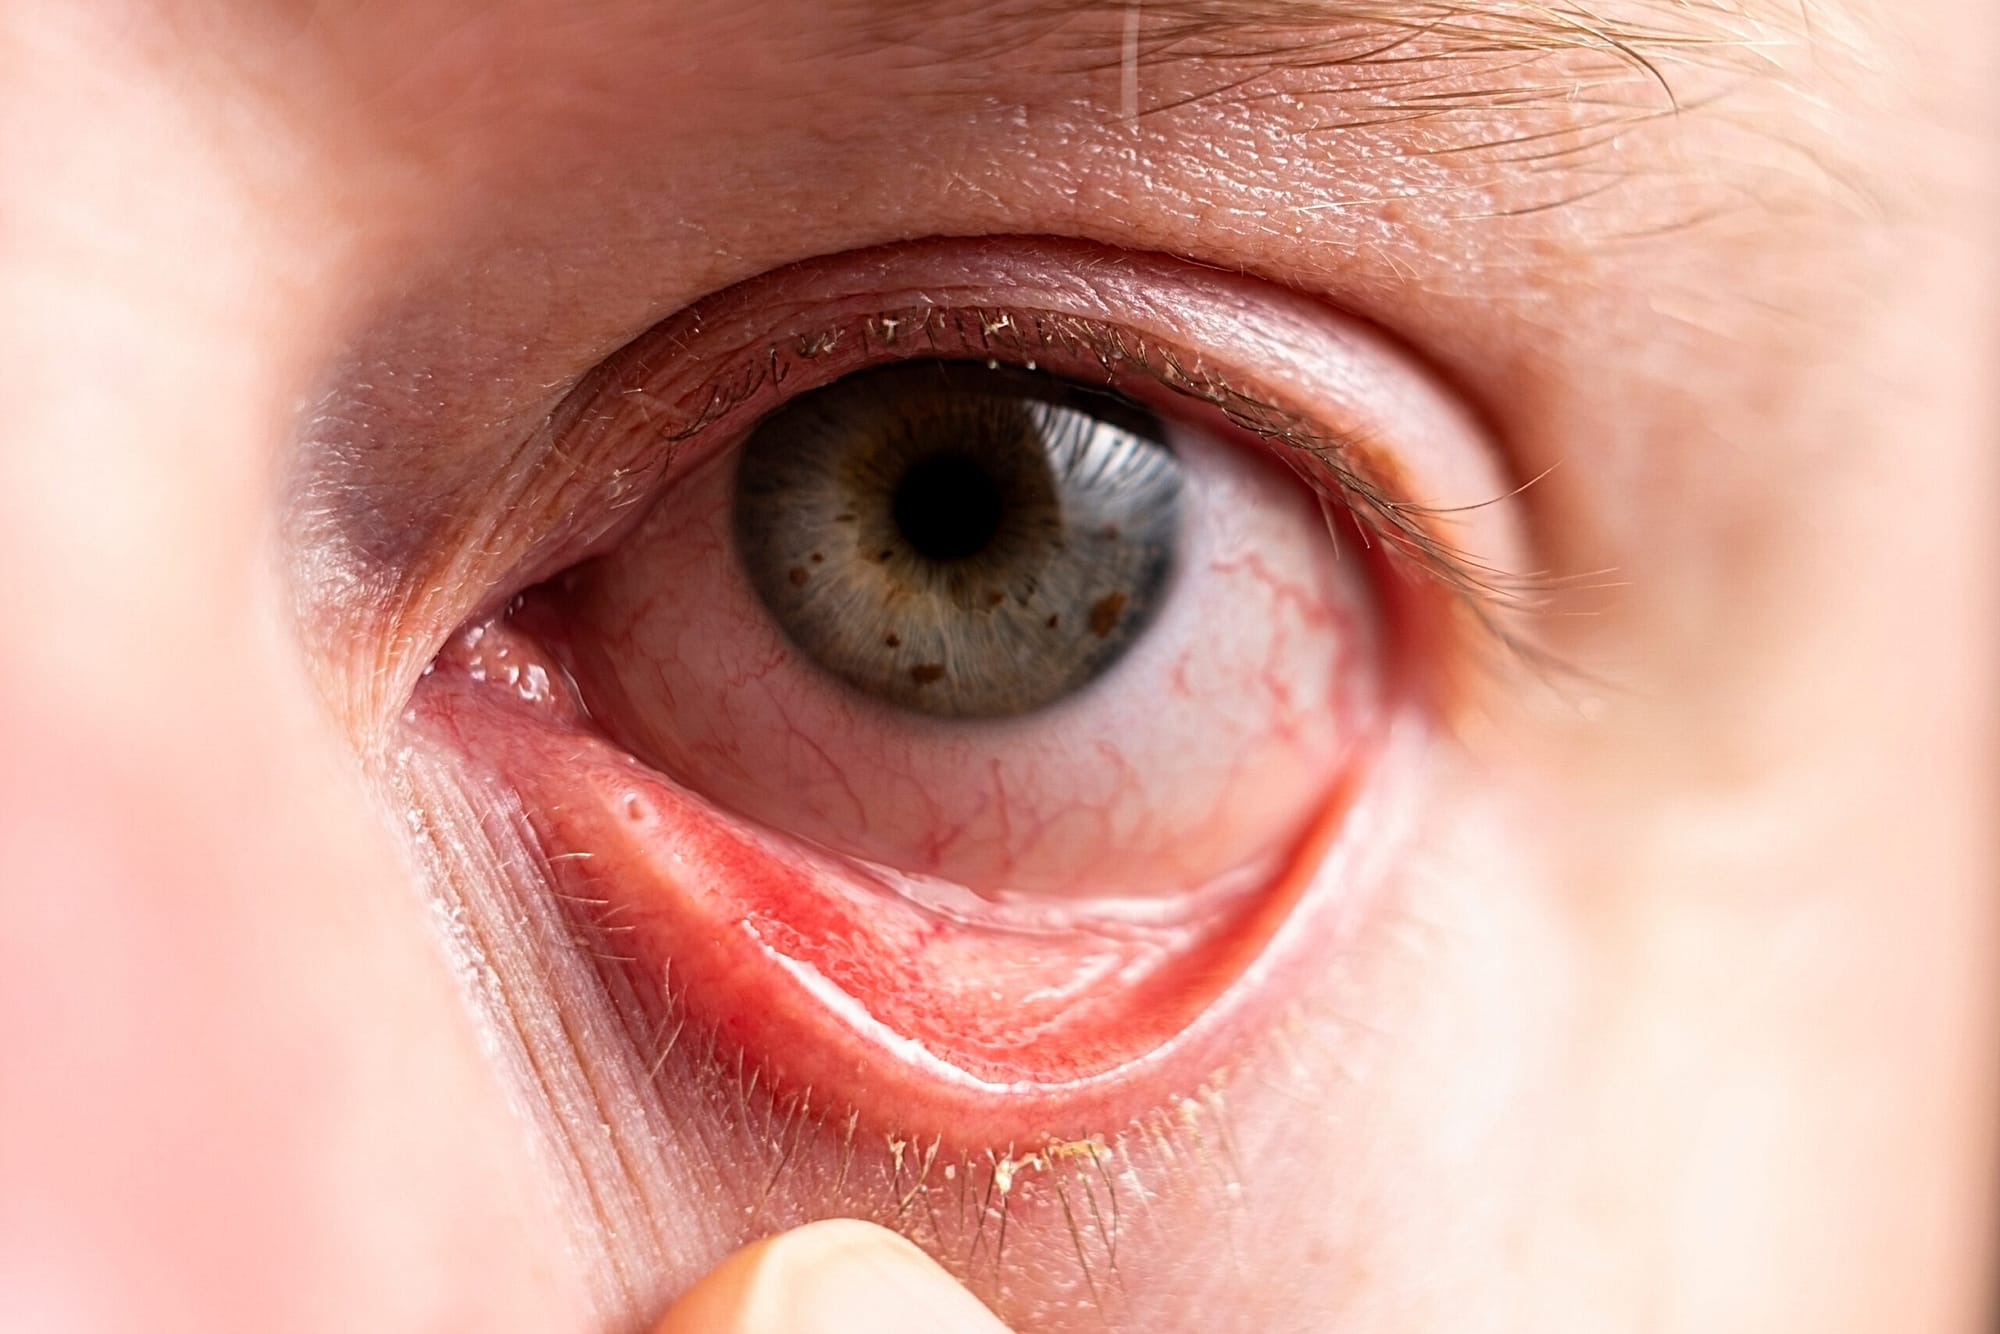 Reddened eye with suppuration on eyelashes closeup